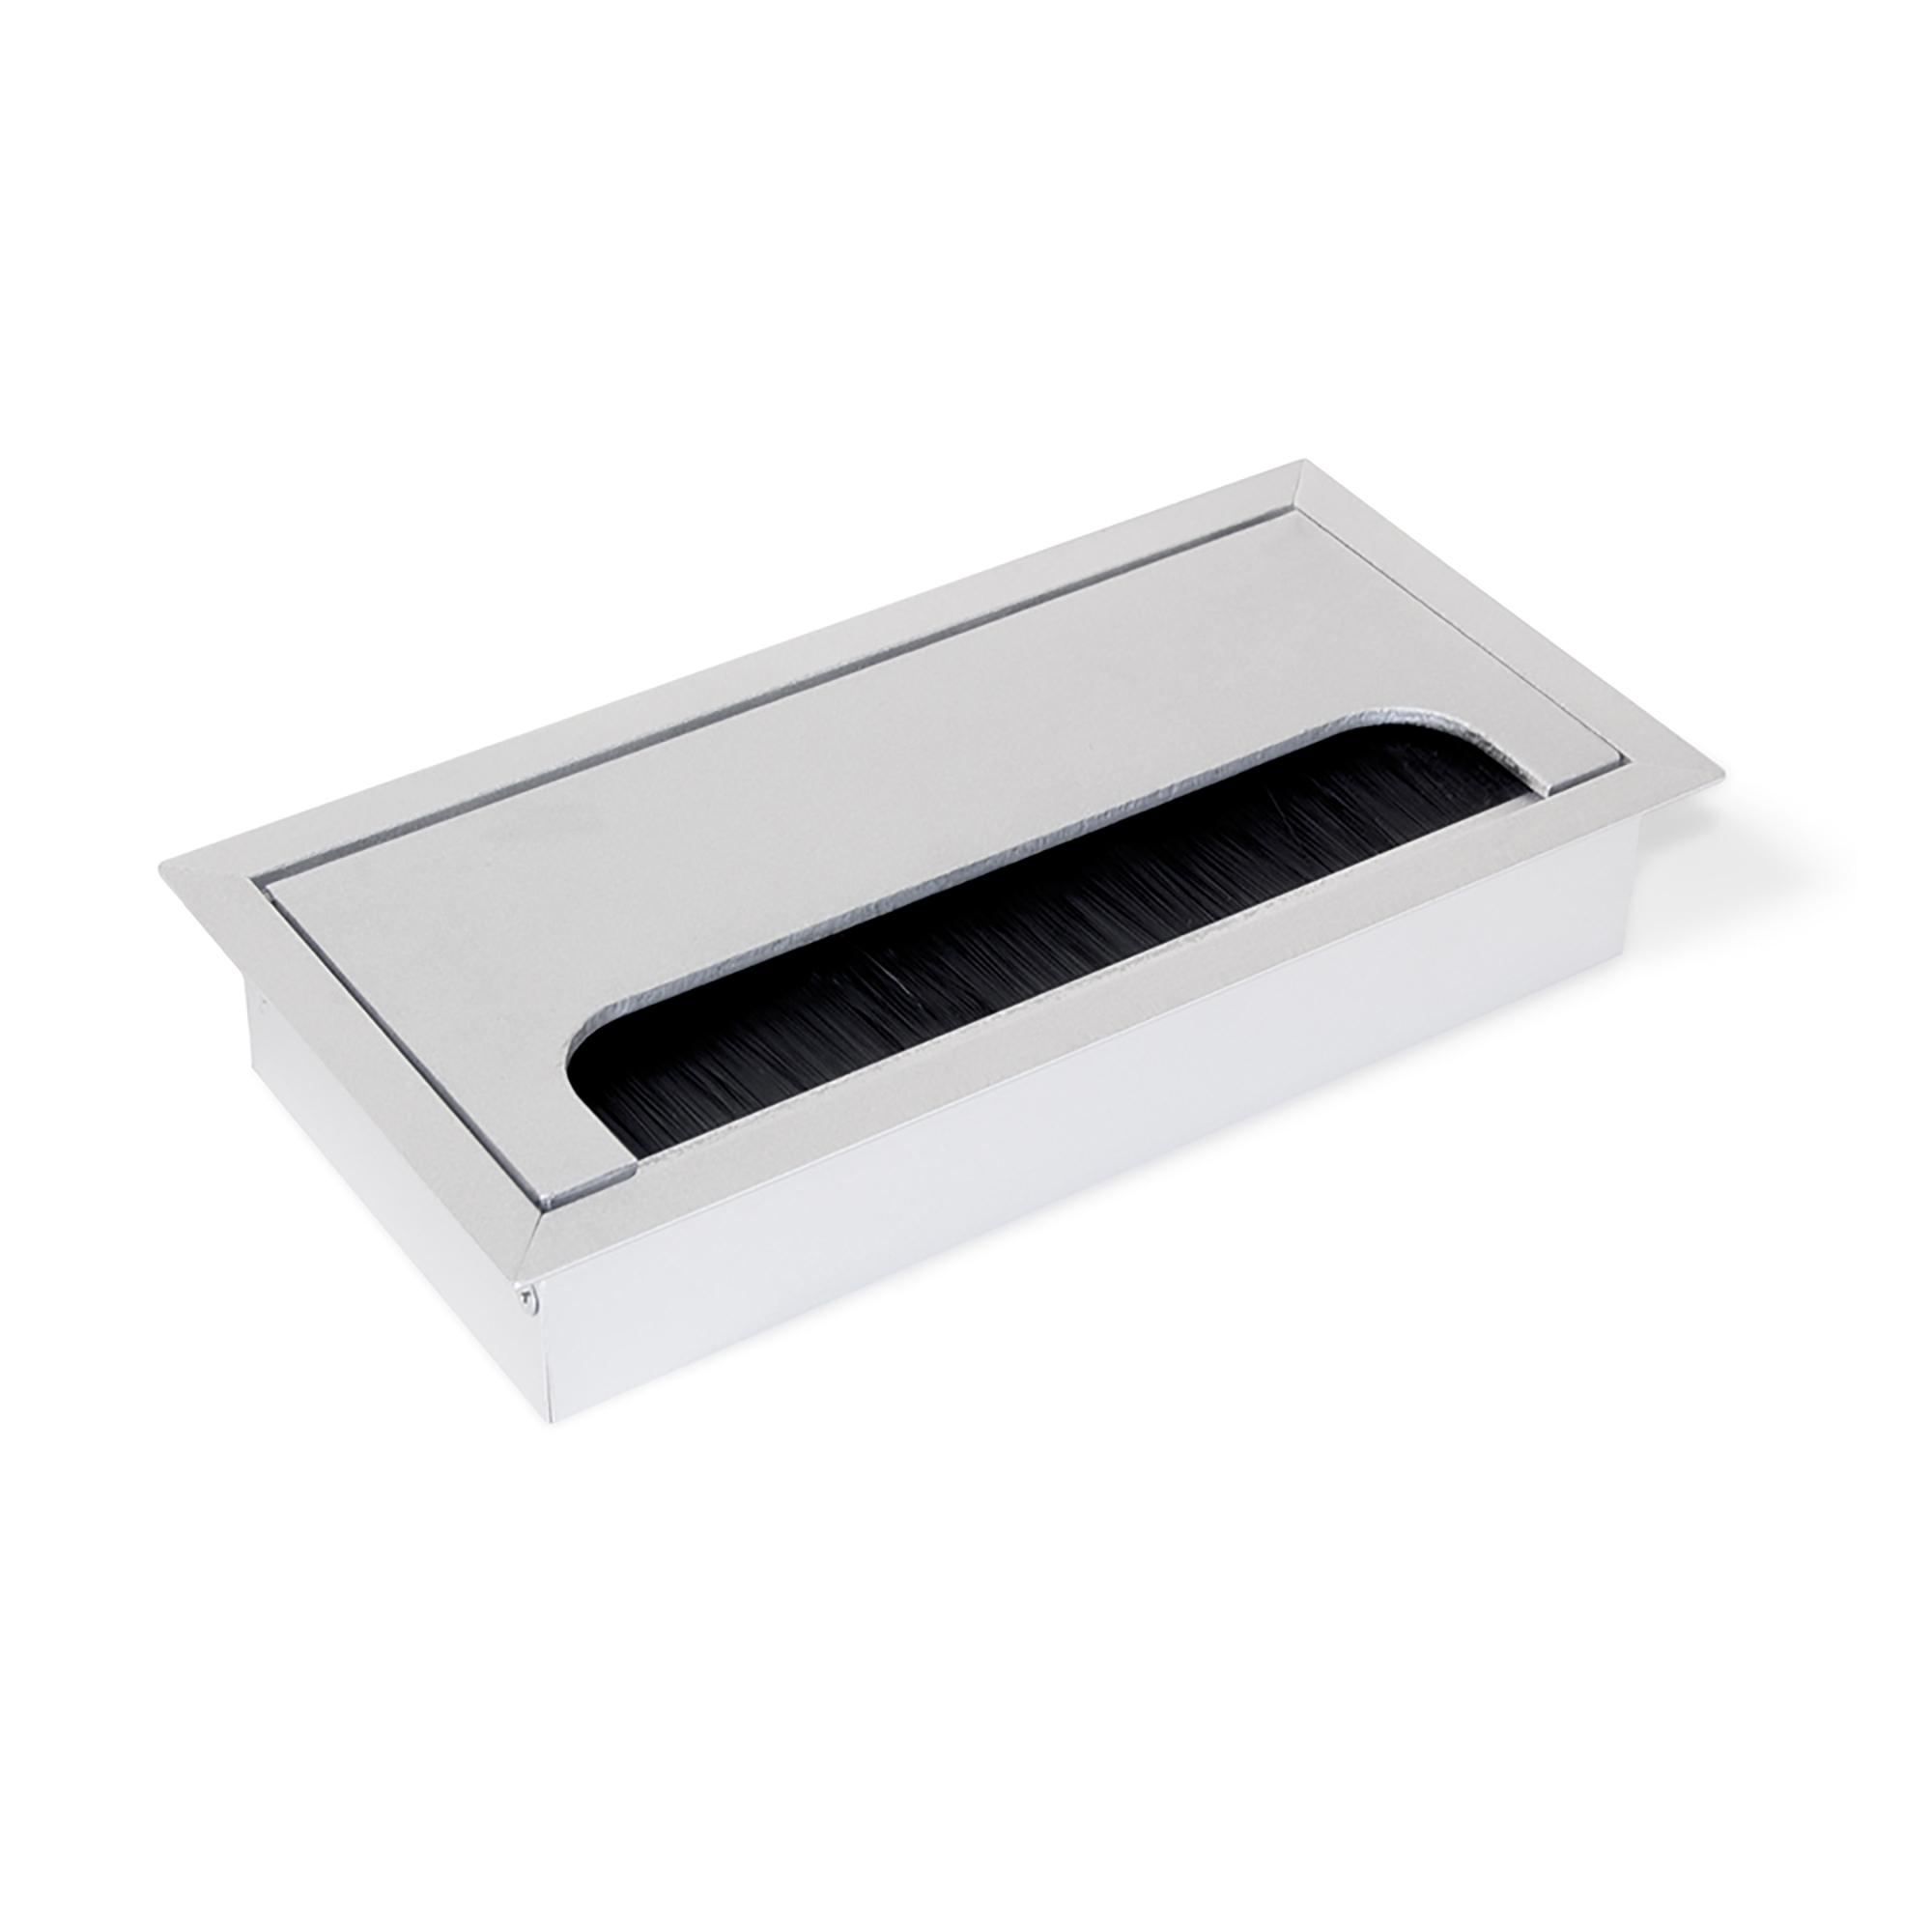 Inicio • Pasacables rectangular con cepillo para mesa de oficina